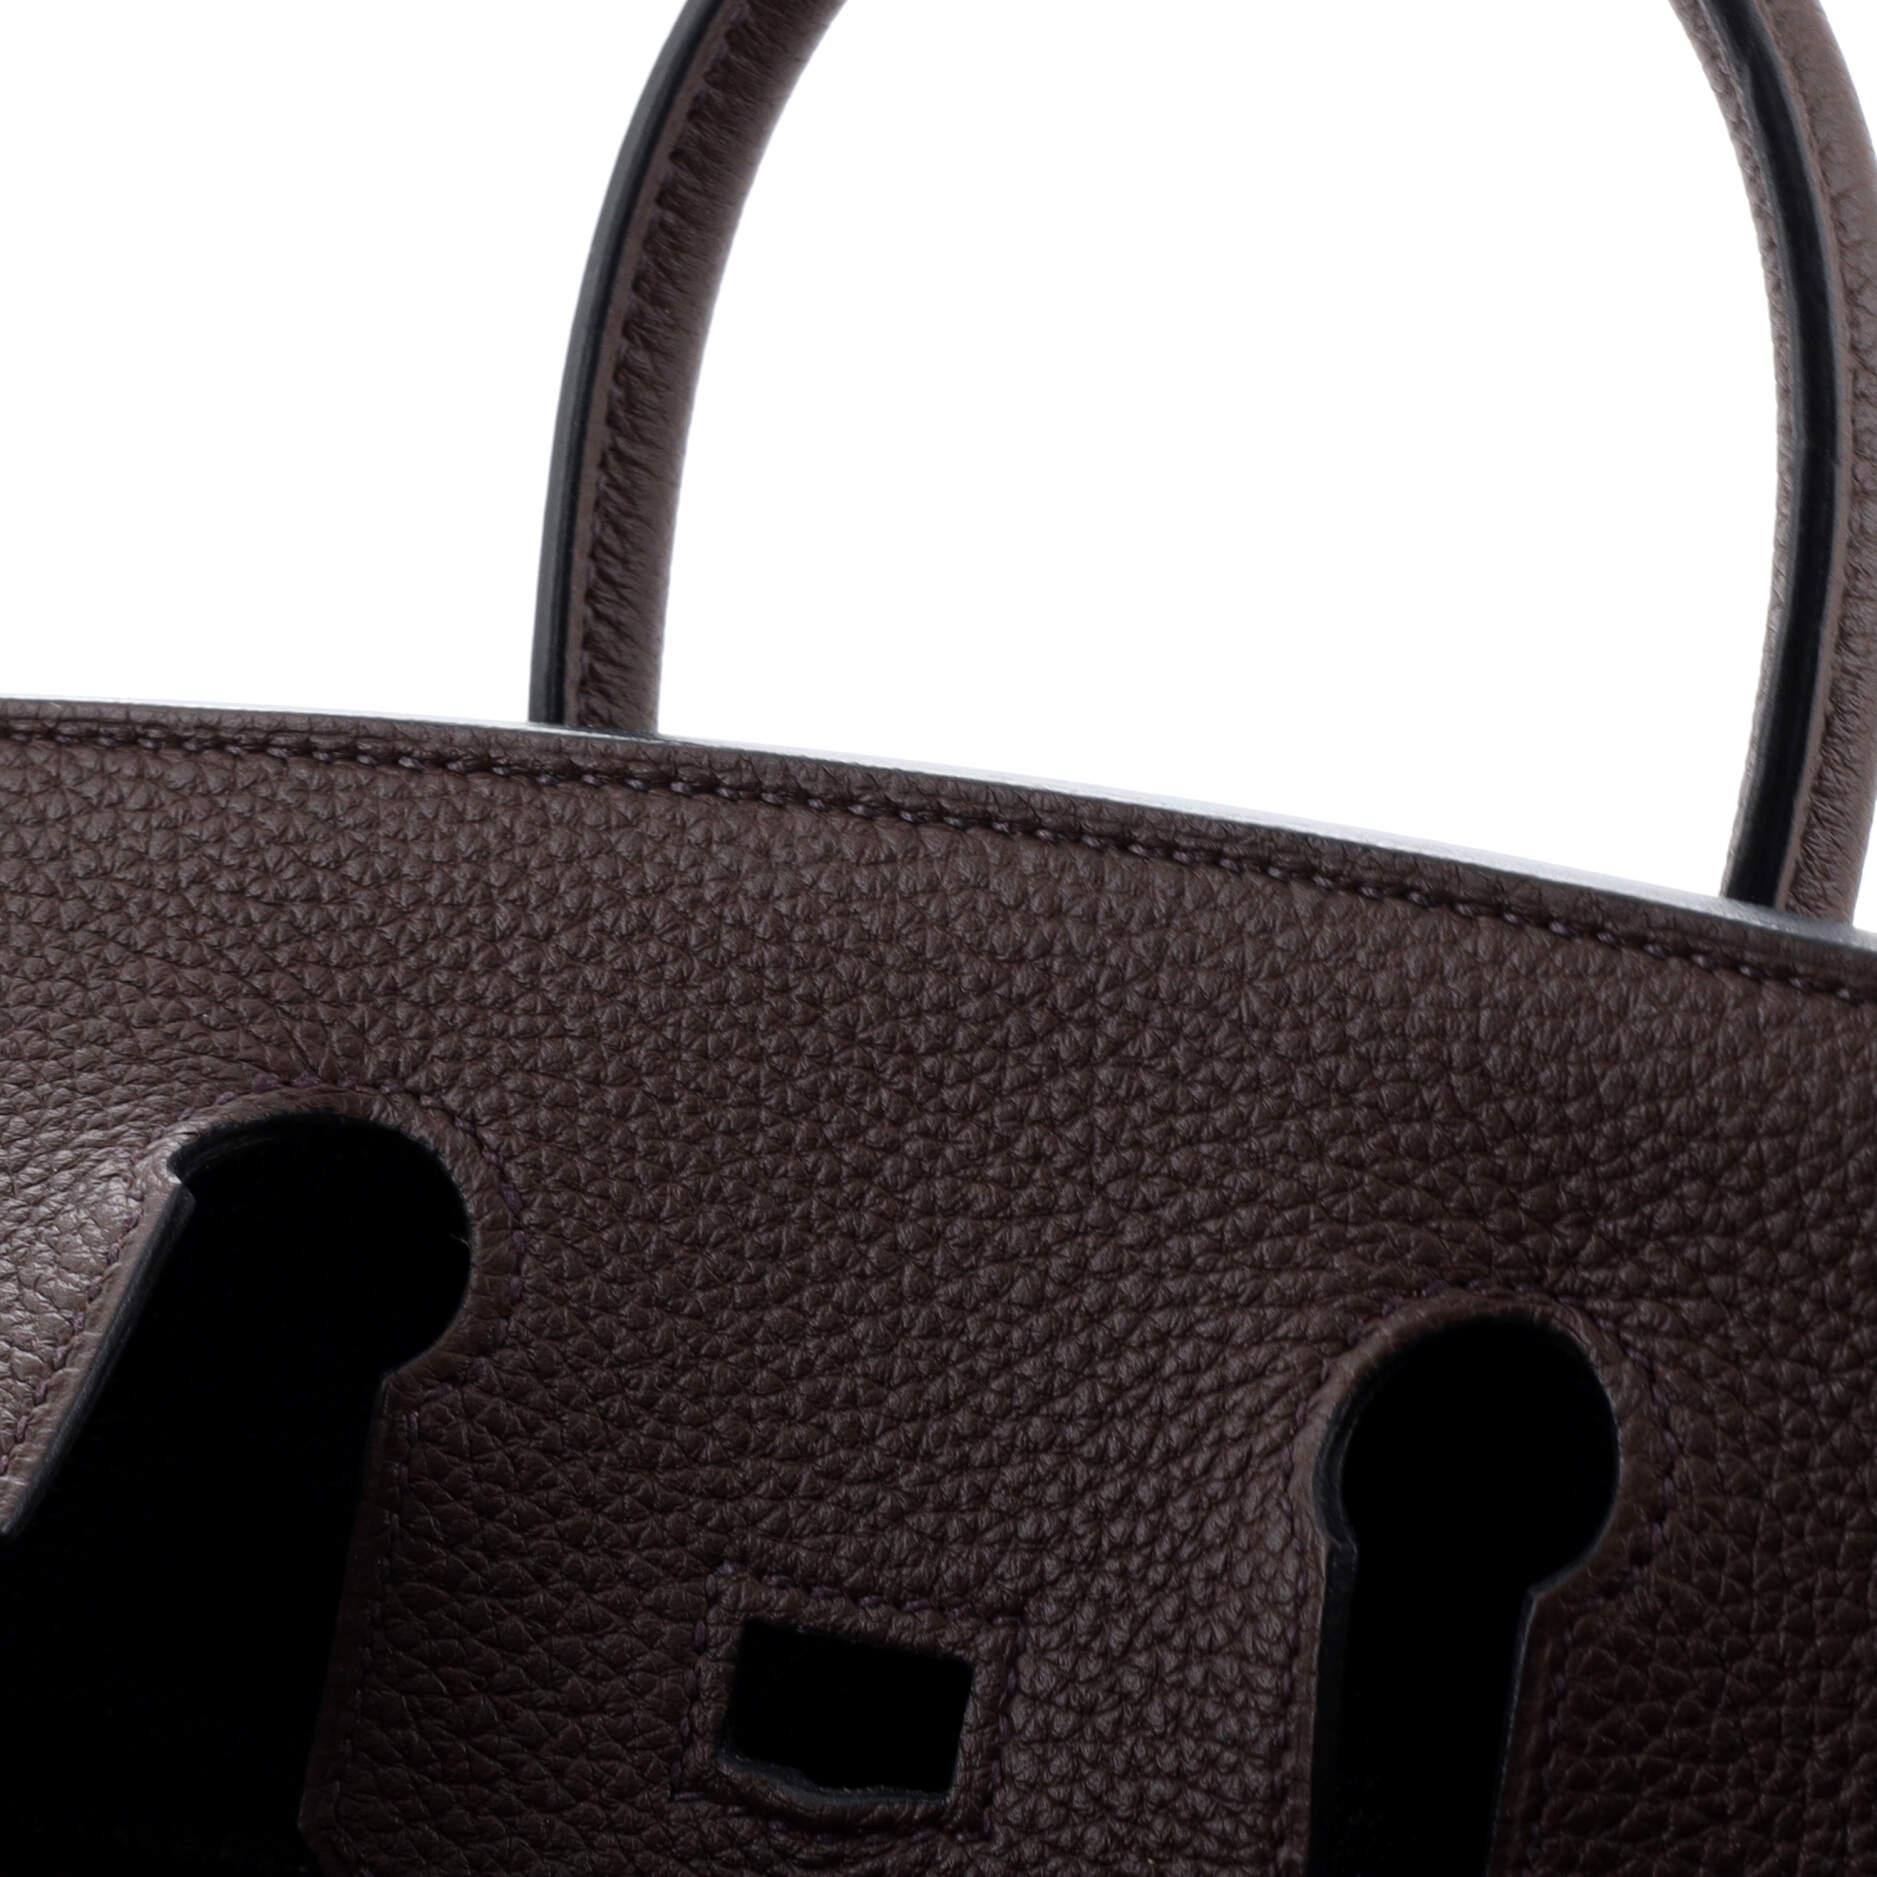 Hermes Birkin Handbag Rouge Sellier Togo with Gold Hardware 25 5